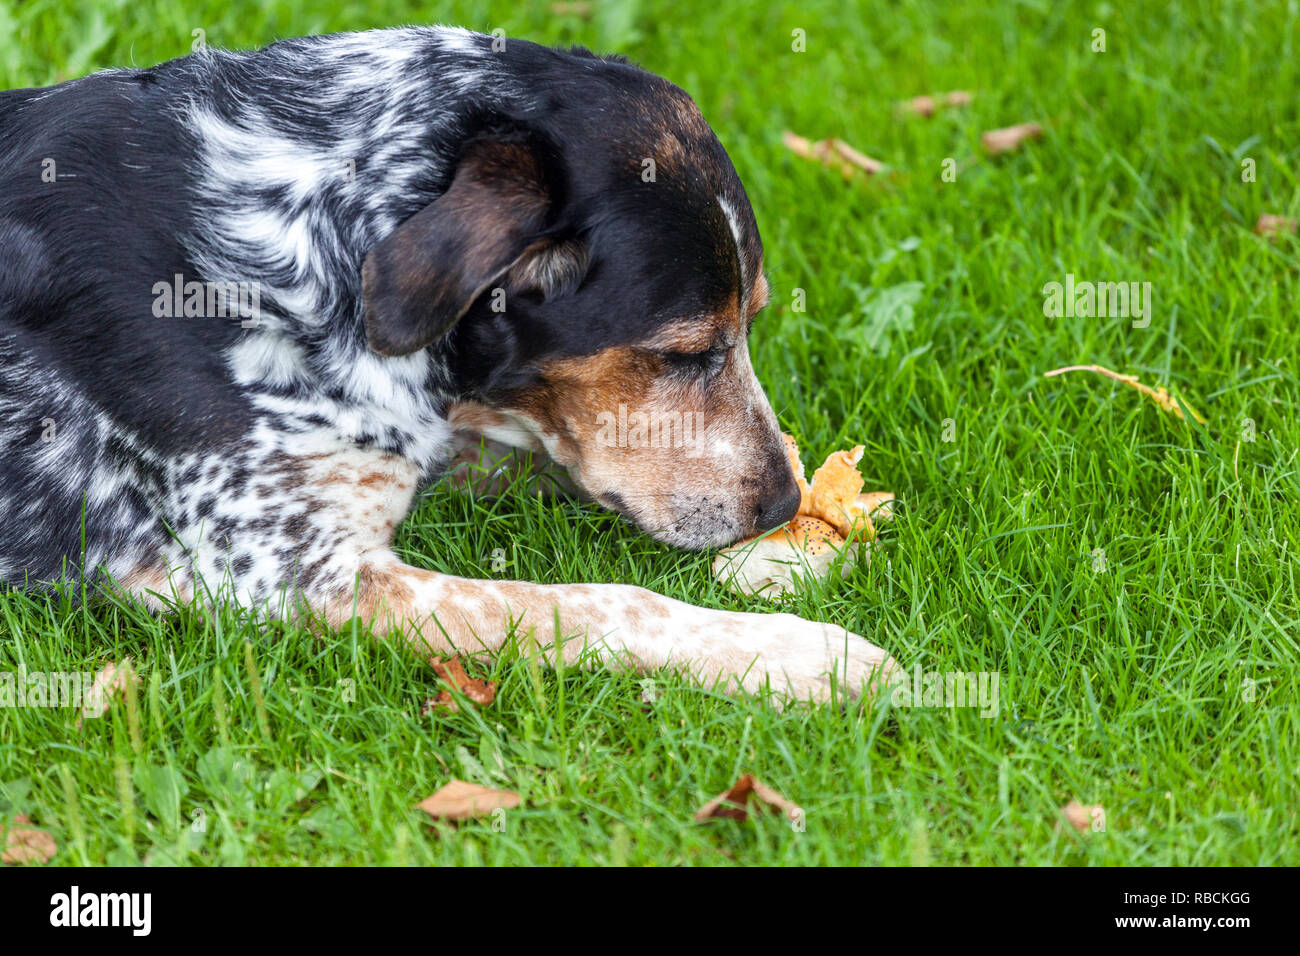 Race tchèque chien à pois bohémien renifleur, chien dans le jardin pas de gens Banque D'Images